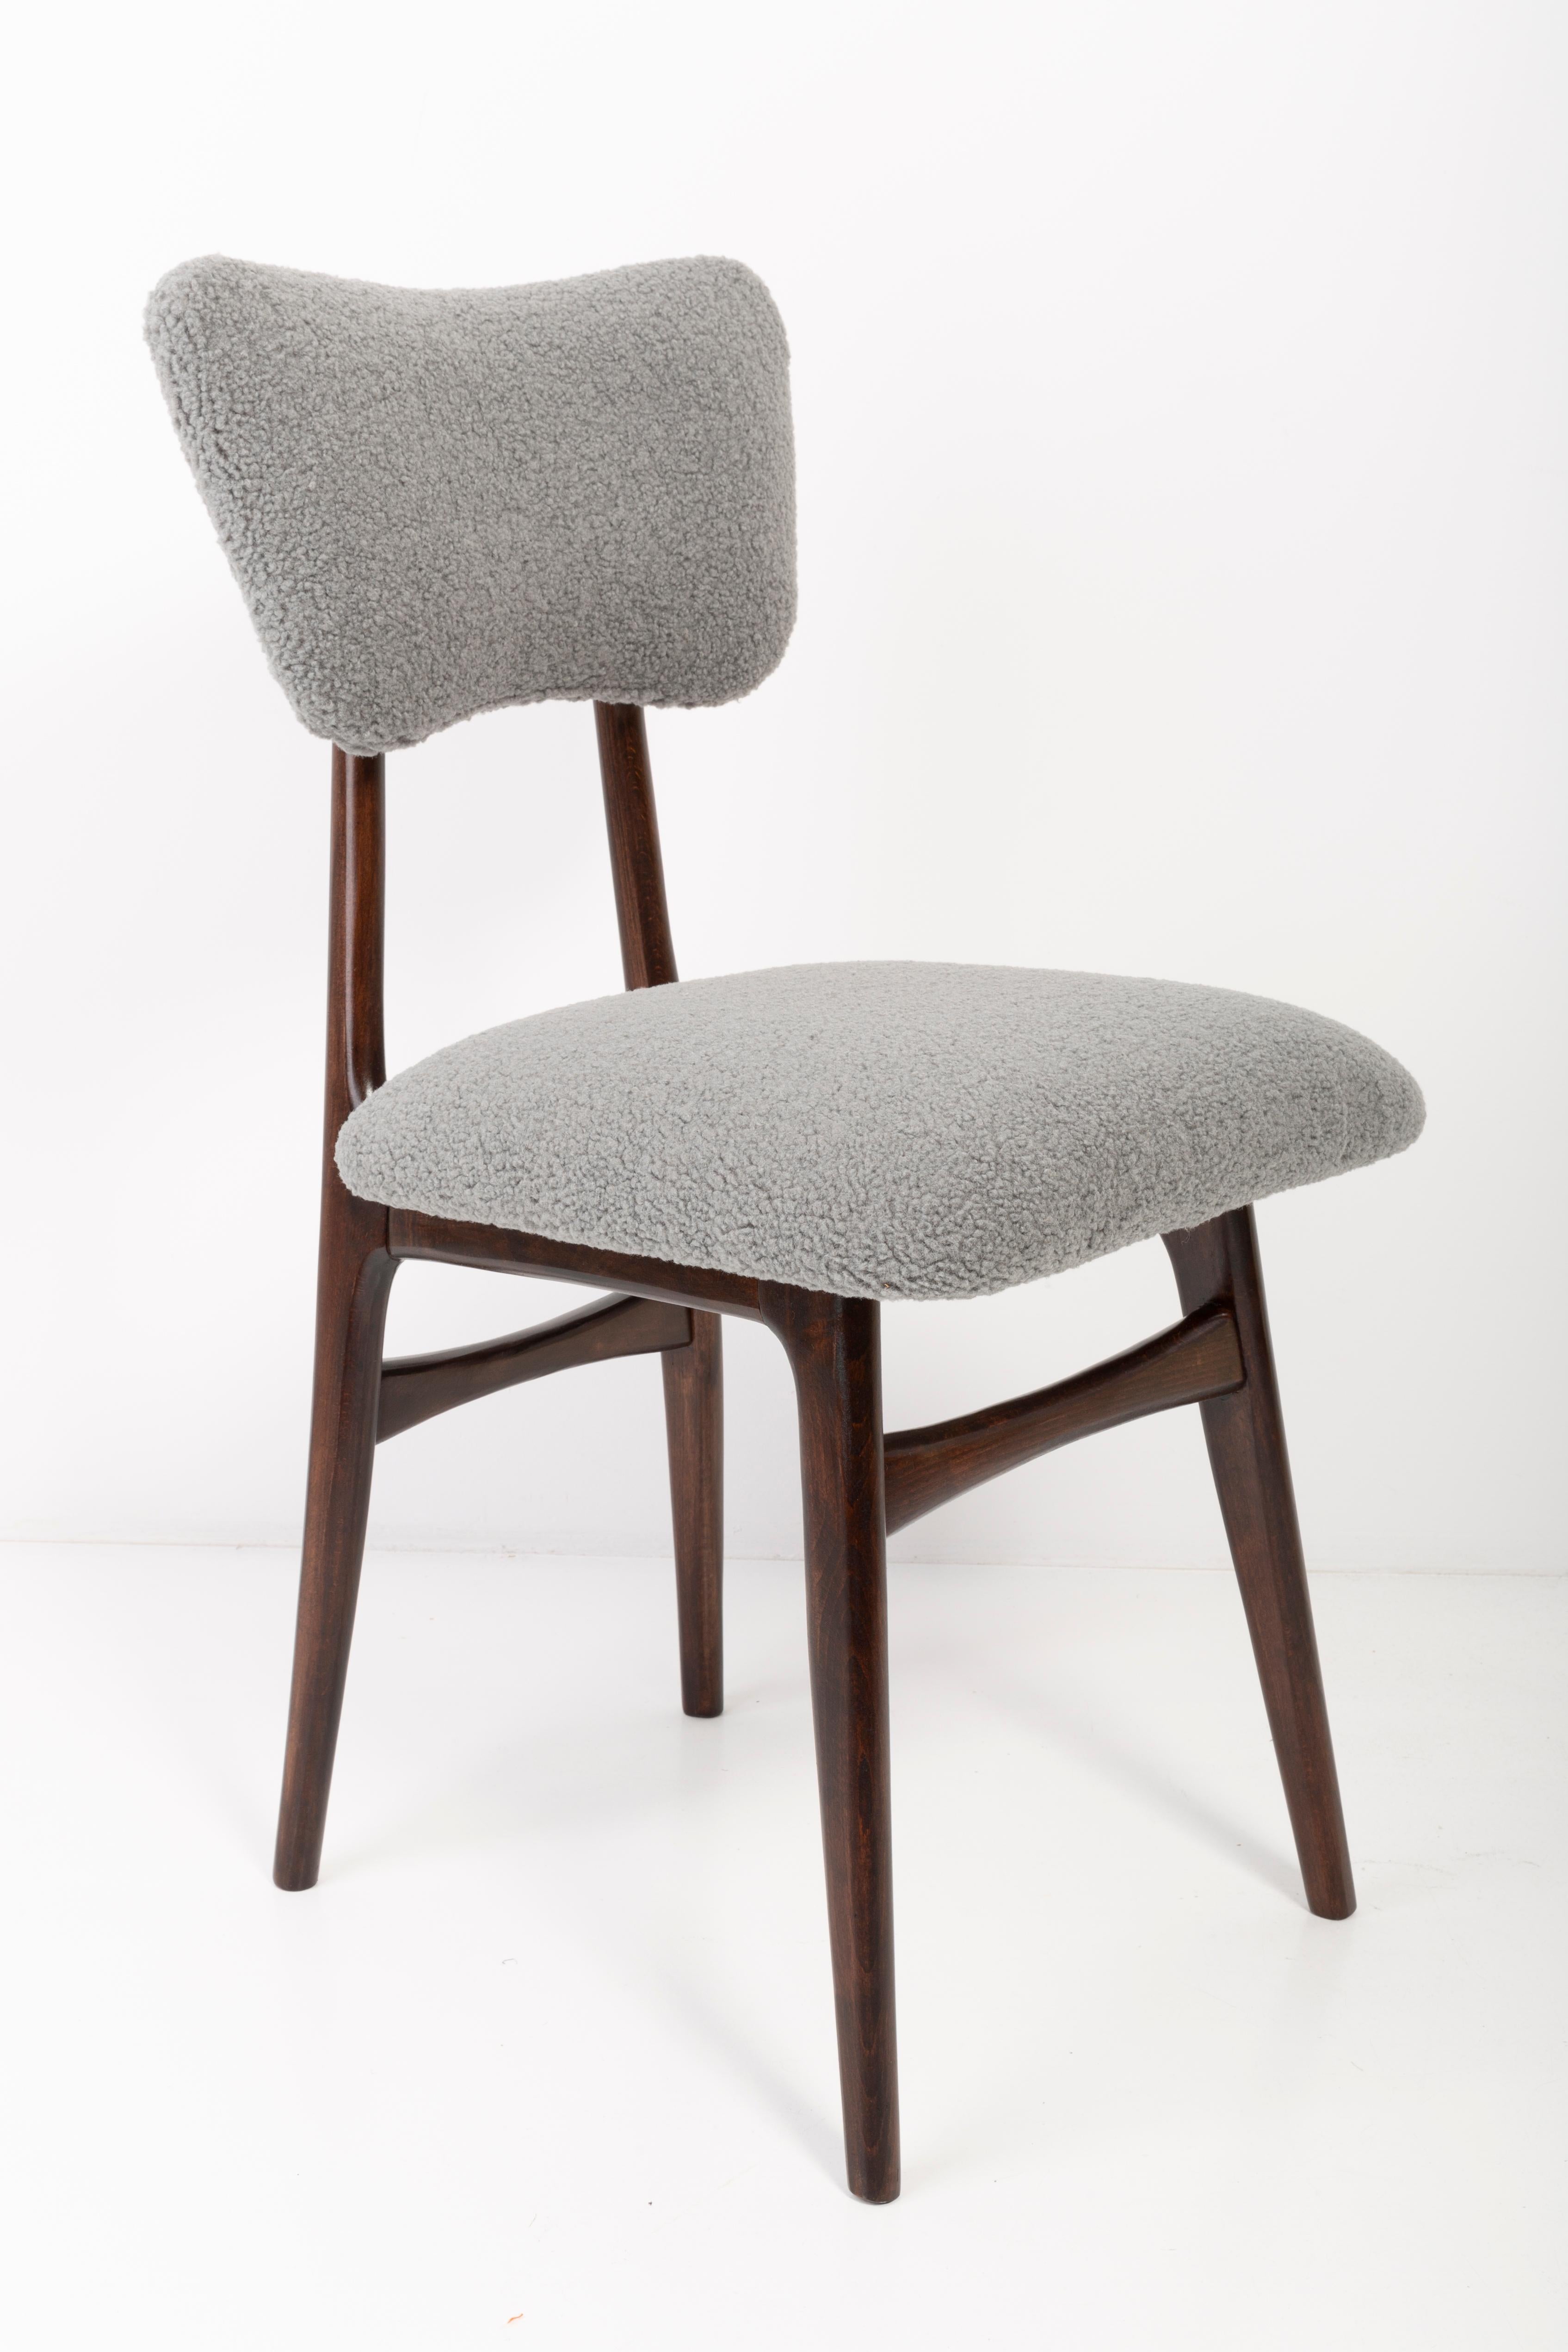 Stühle entworfen von Prof. Rajmund Halas. Hergestellt aus Buchenholz. Der Stuhl wurde komplett neu gepolstert, die Holzarbeiten wurden aufgefrischt. Sitz und Rückenlehne sind mit grauem, strapazierfähigem und angenehm zu berührendem Bouclestoff